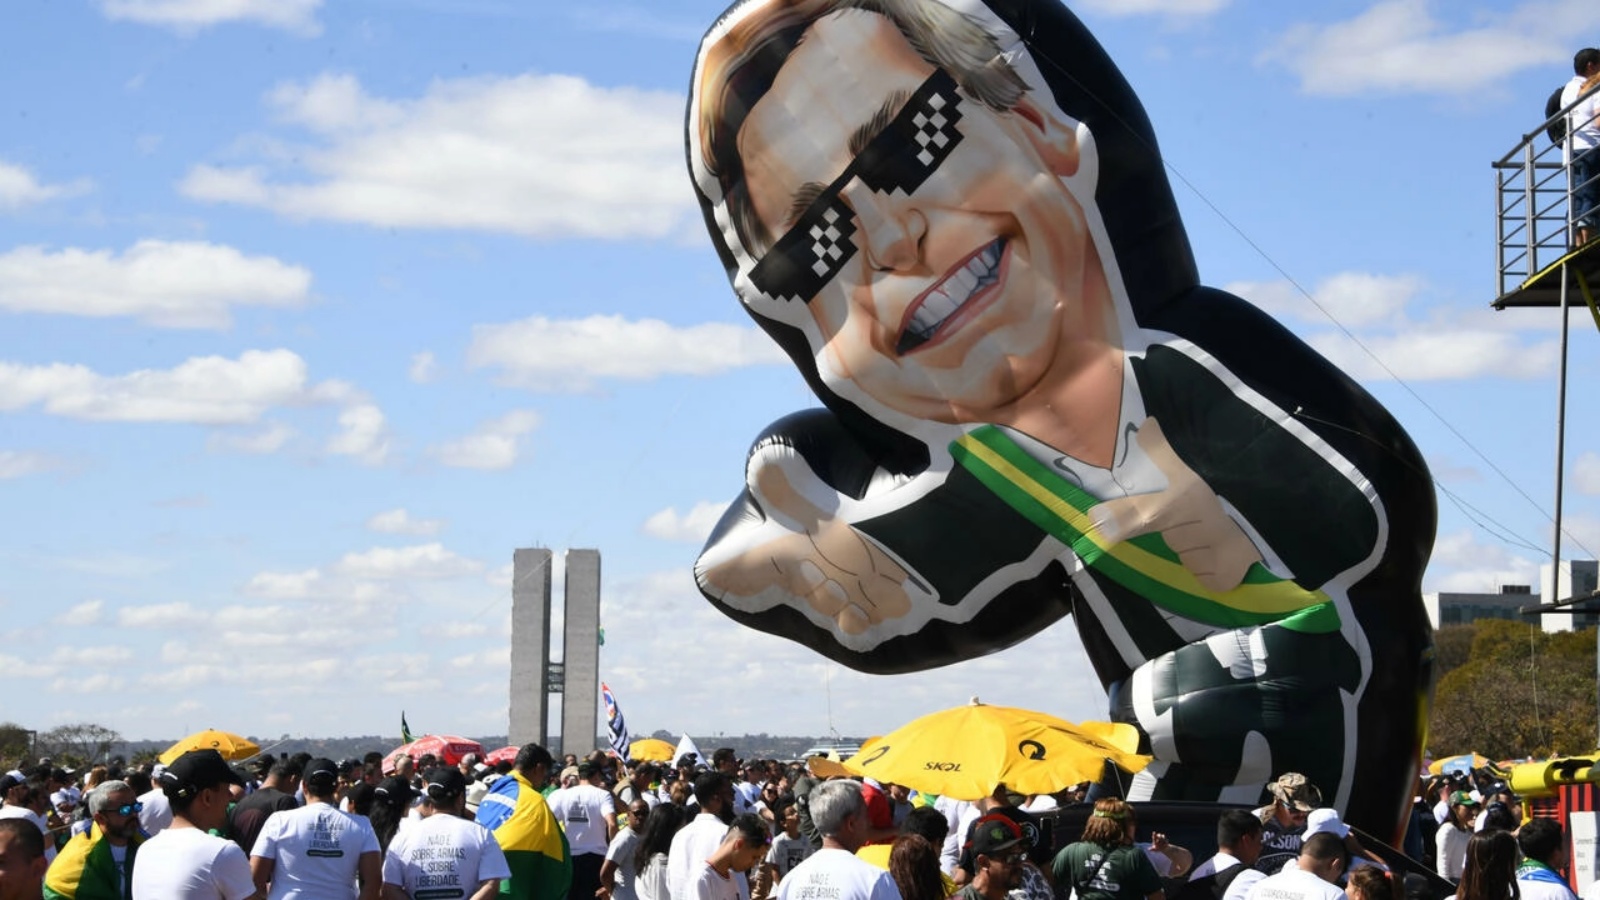 متظاهرون مؤيدون لحمل السلاح يرفعون دمية تمثل الرئيس البرازيلي جاير بولسونارو، في برازيليا في 9 يوليو 2022 